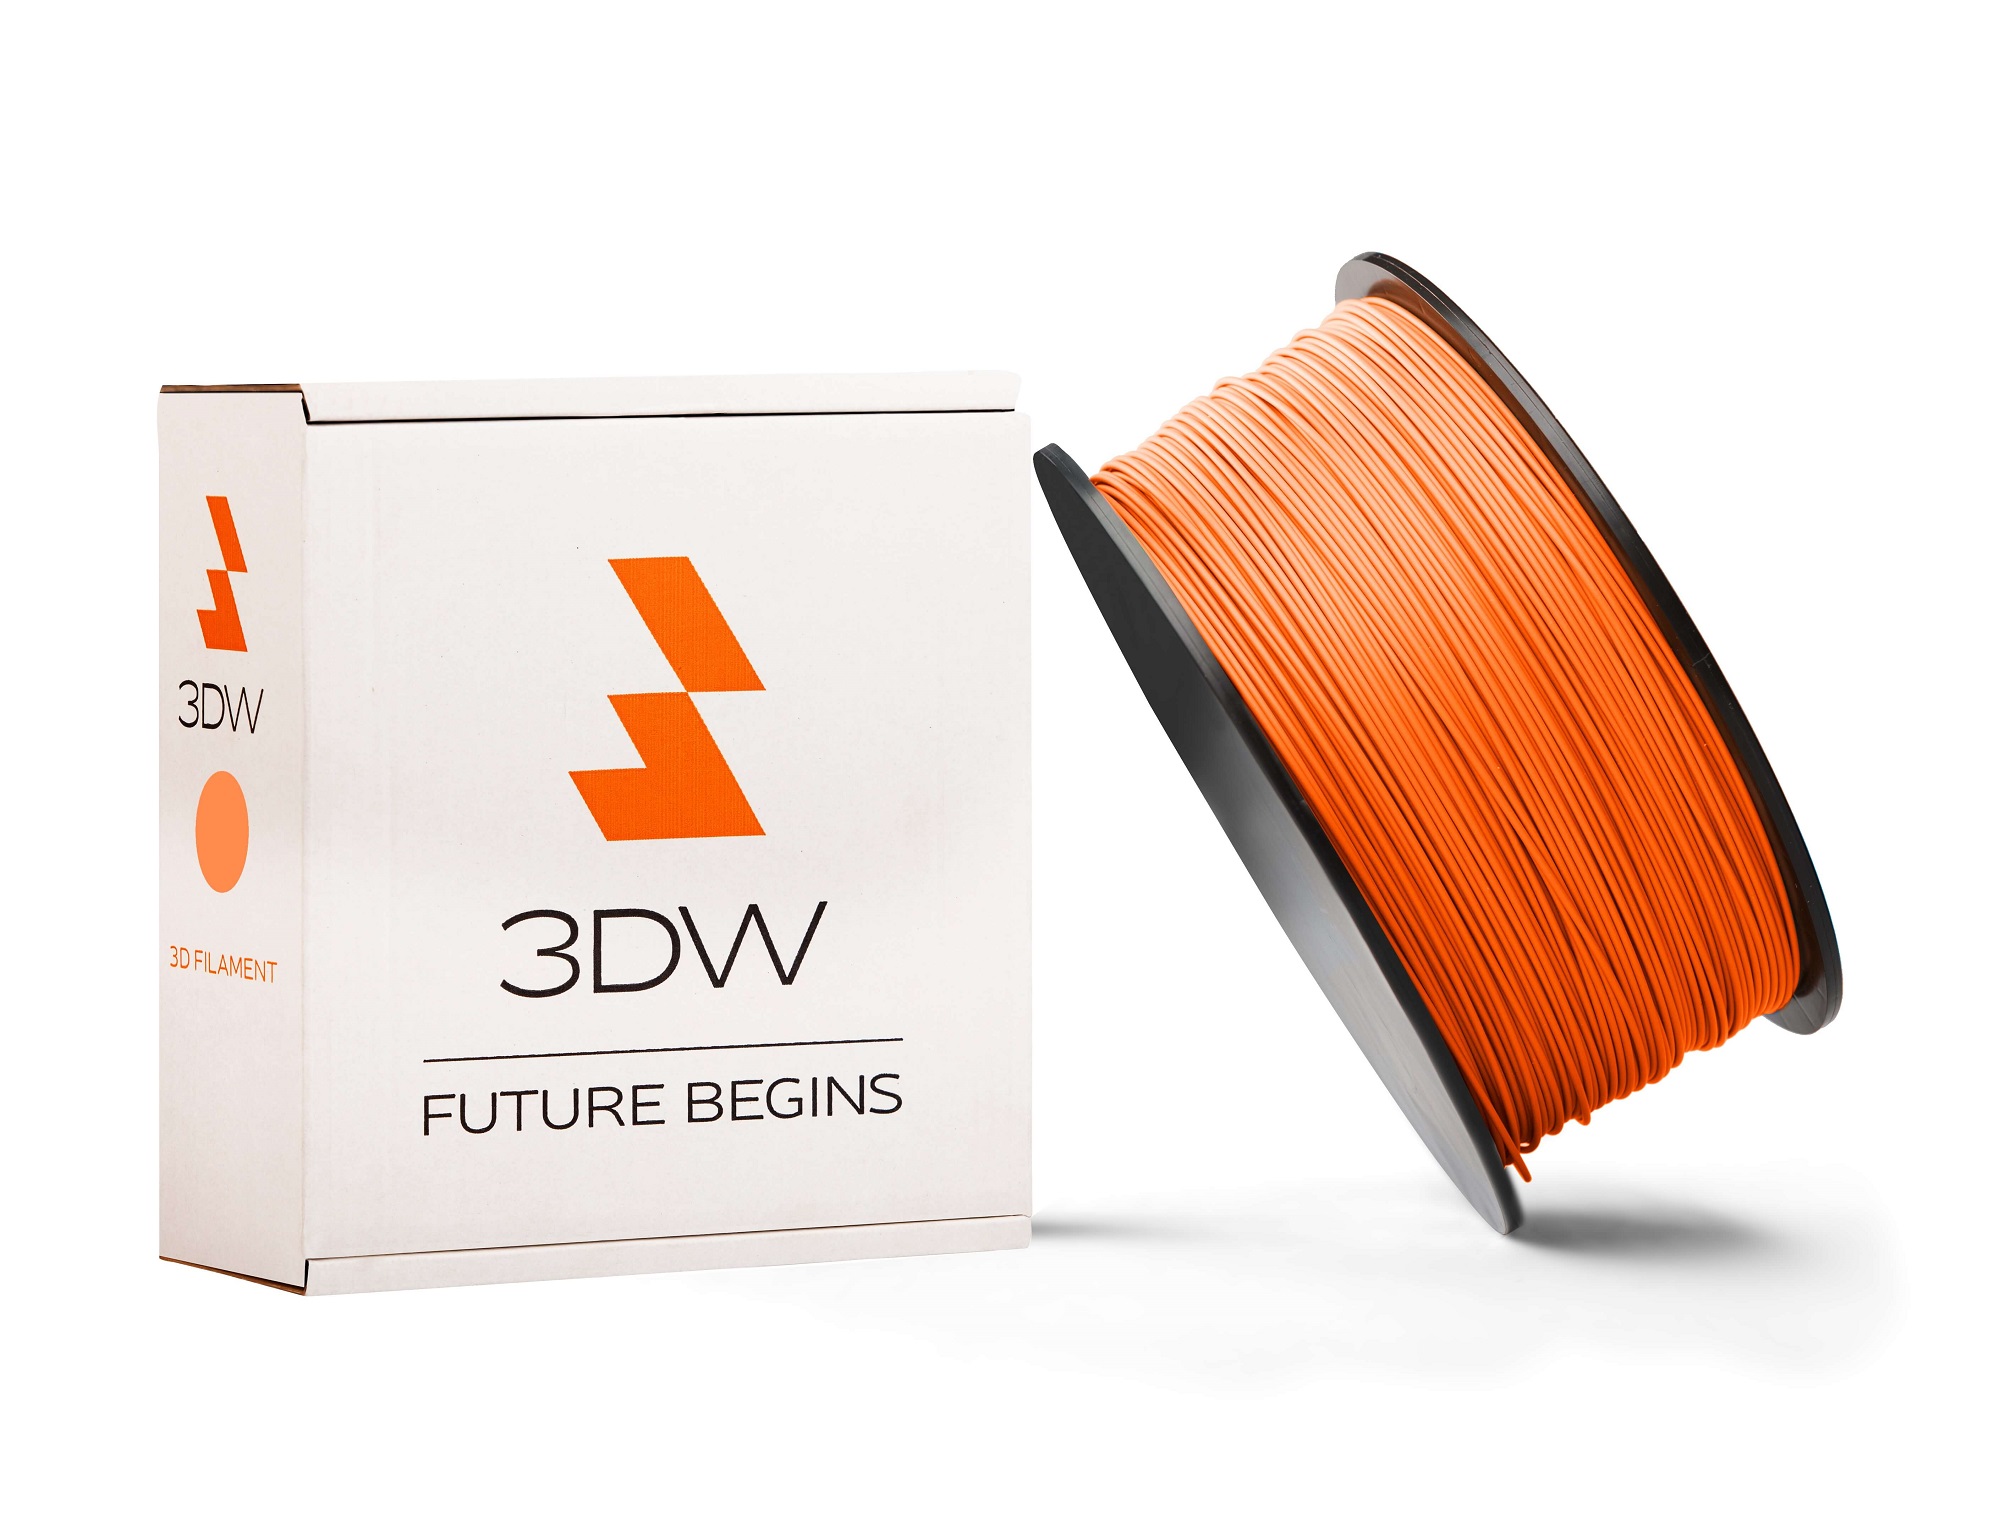 3DW - PLA filament 1,75mm oranžová,0,5kg, tisk 190-210°C